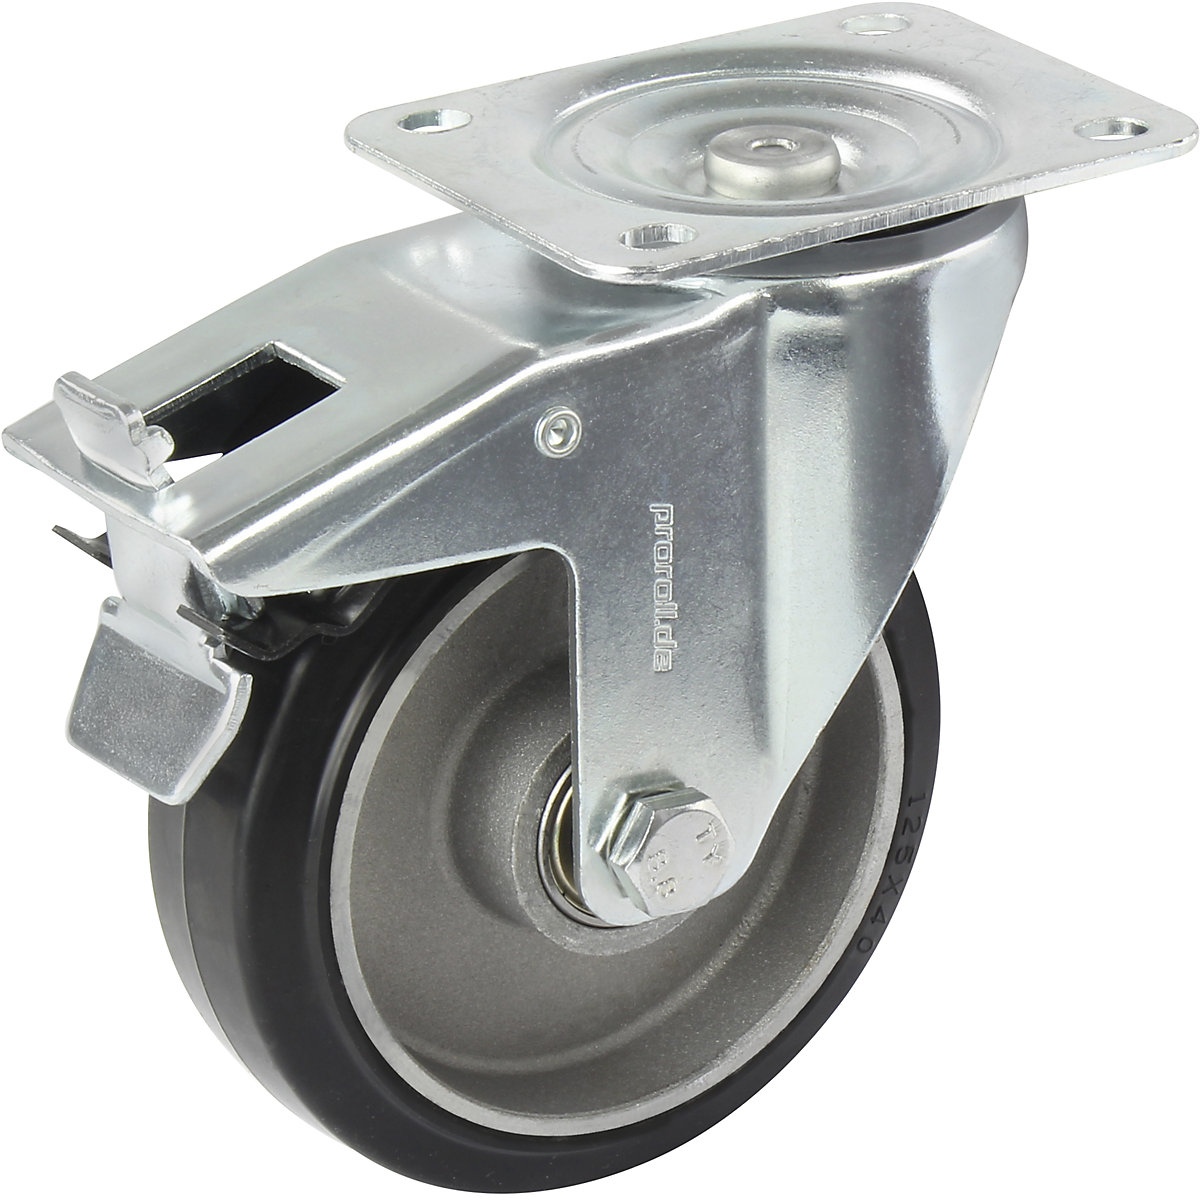 Elastická celogumová obruč, čierná – Proroll, Ø x šírka kolesa 100 x 40 mm, voštinový disk, otočné koliesko s dvojitou brzdou-6